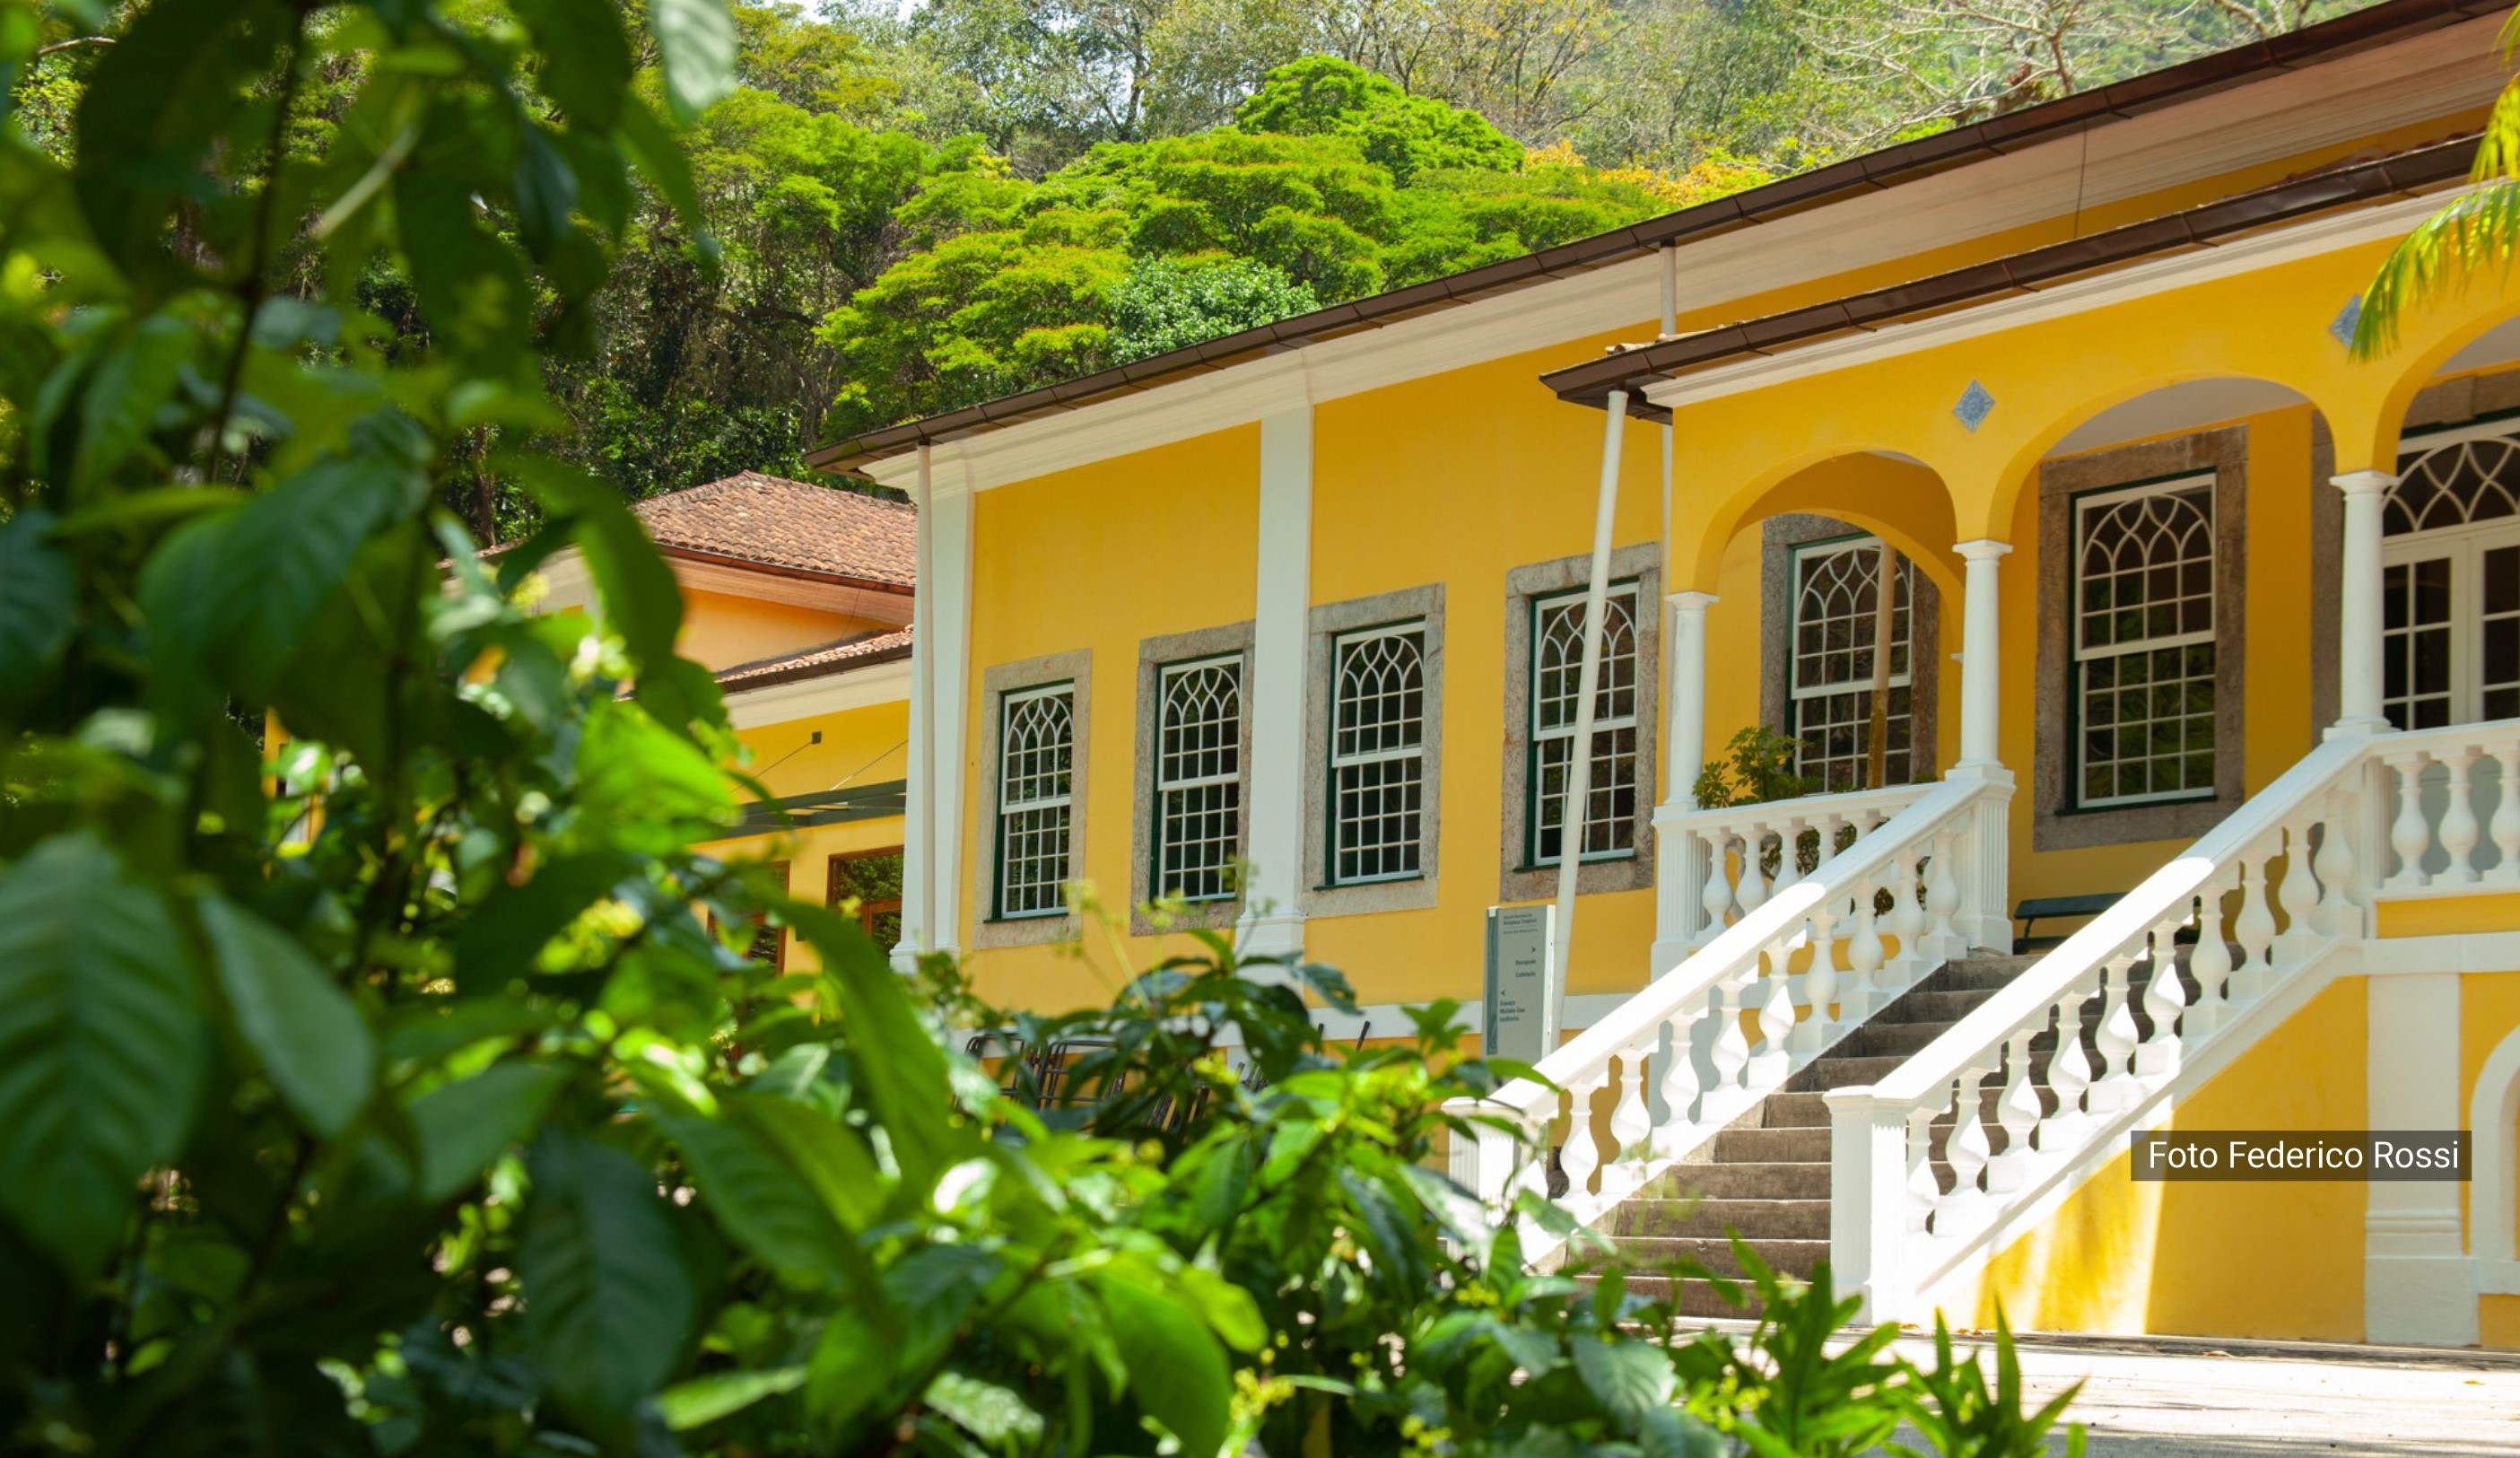 Rio de Janeiro Botanical Garden selects post-doctoral fellow